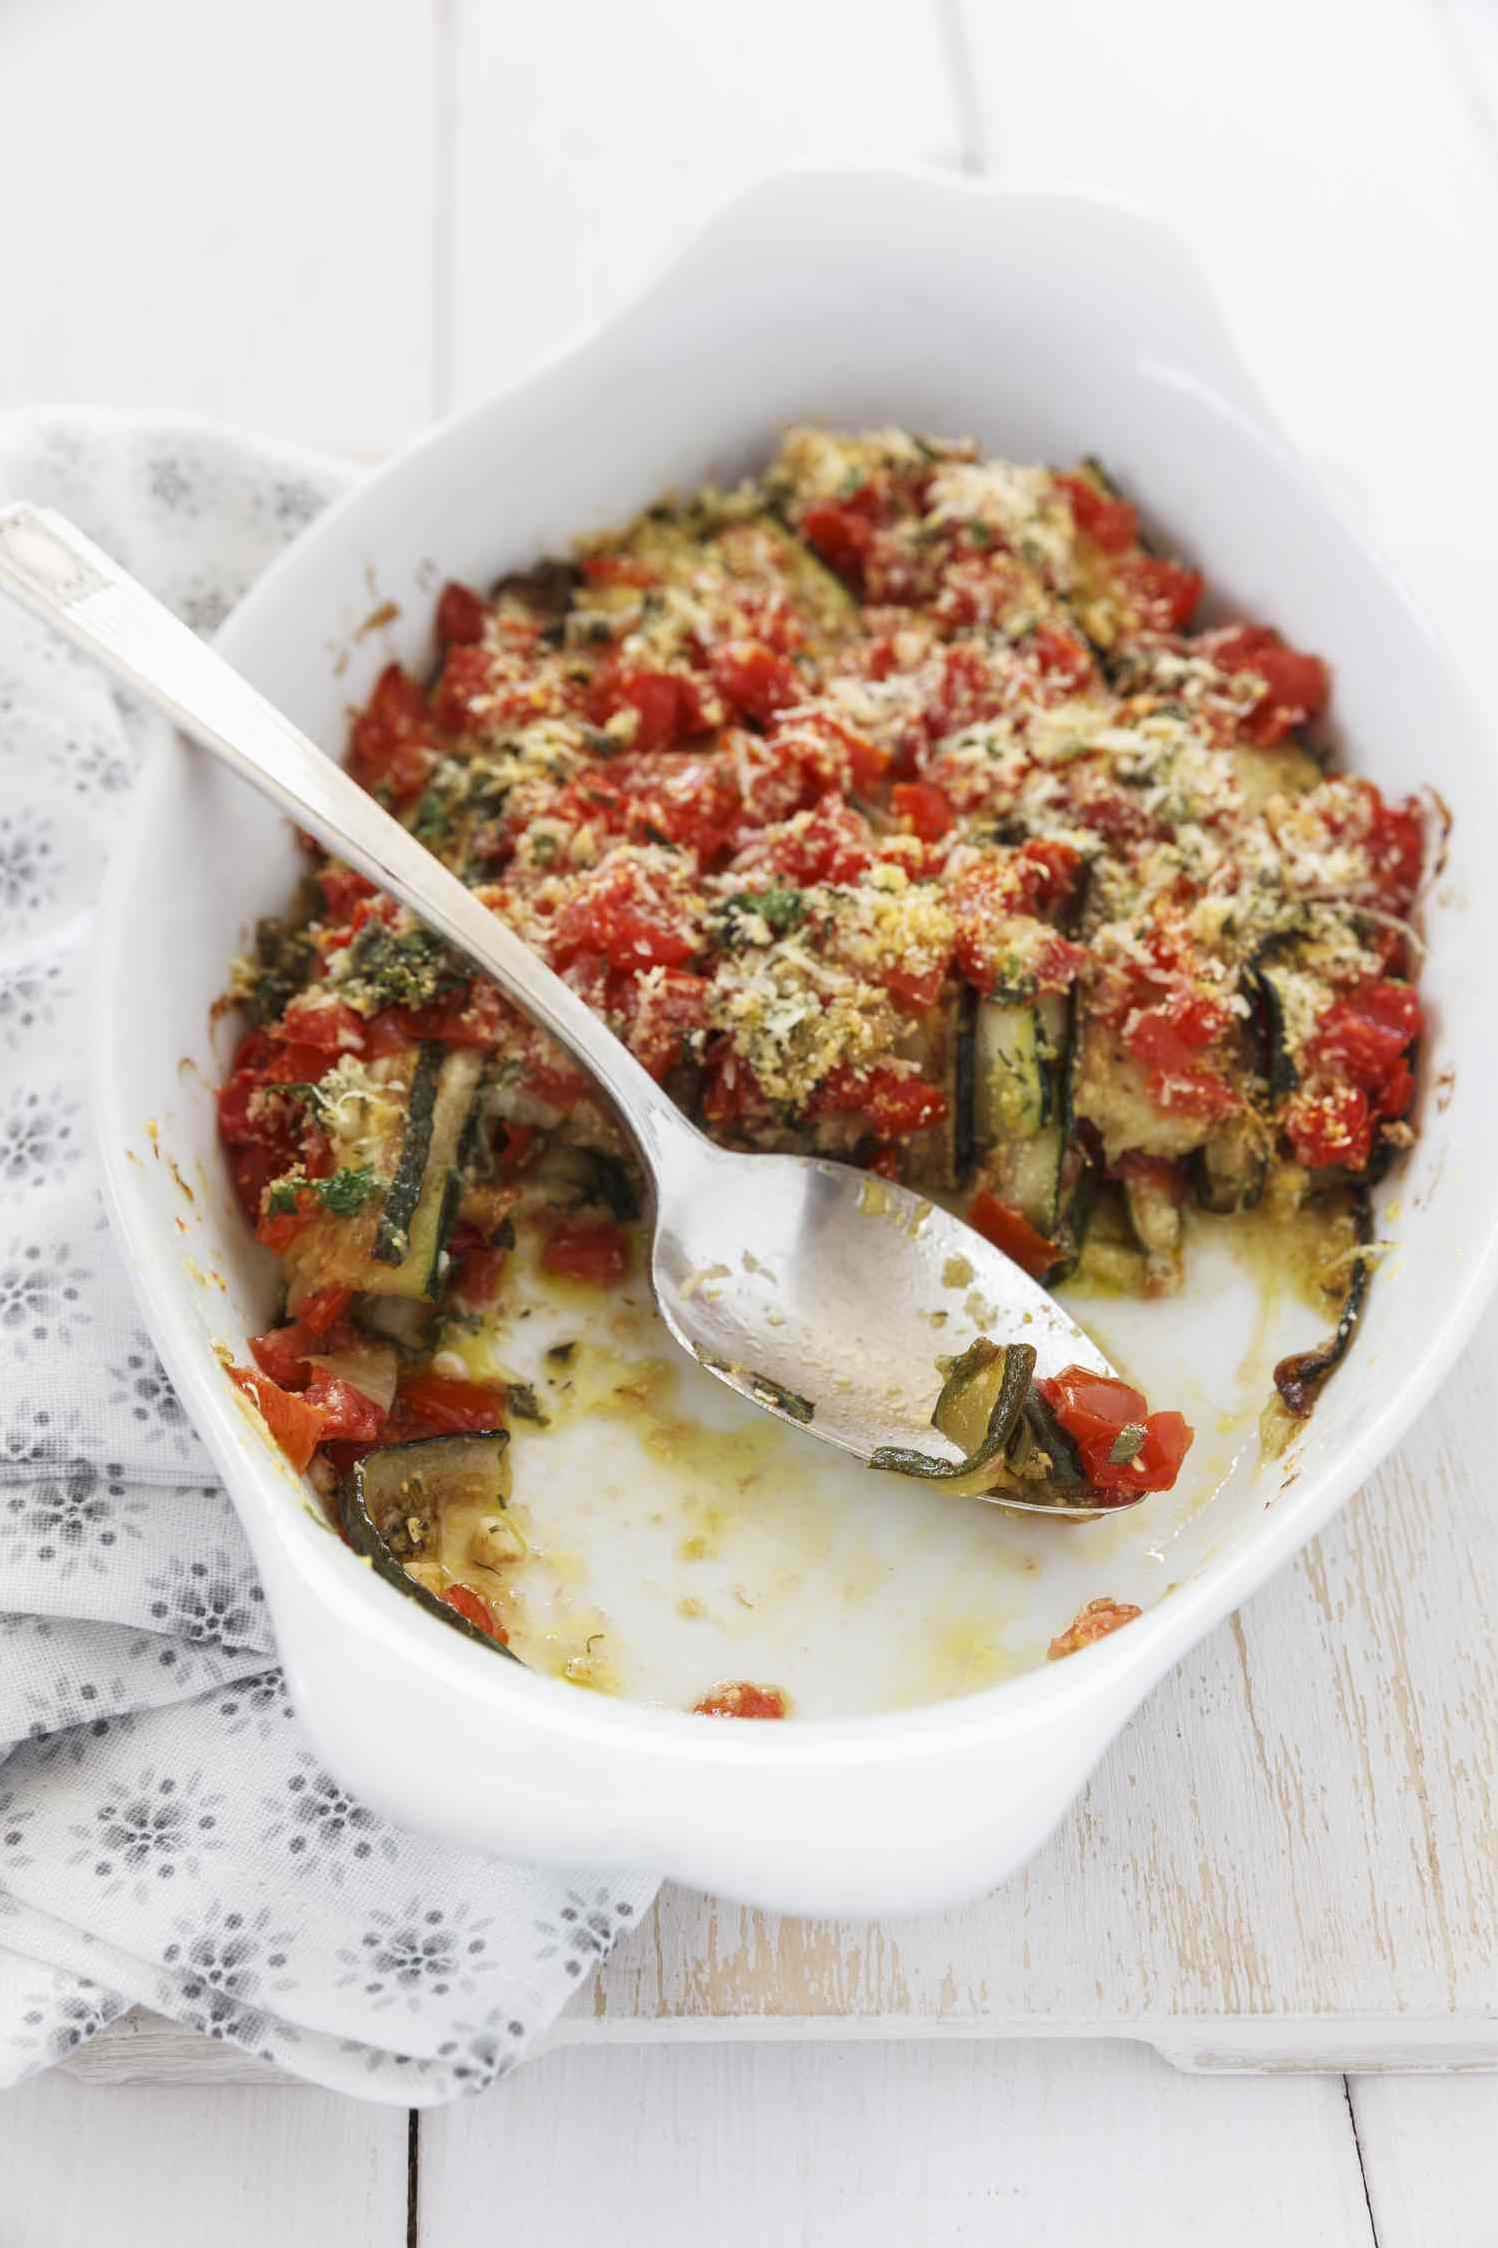 Delicious Zucchini Tomato Bacon Recipe – Easy and Healthy!